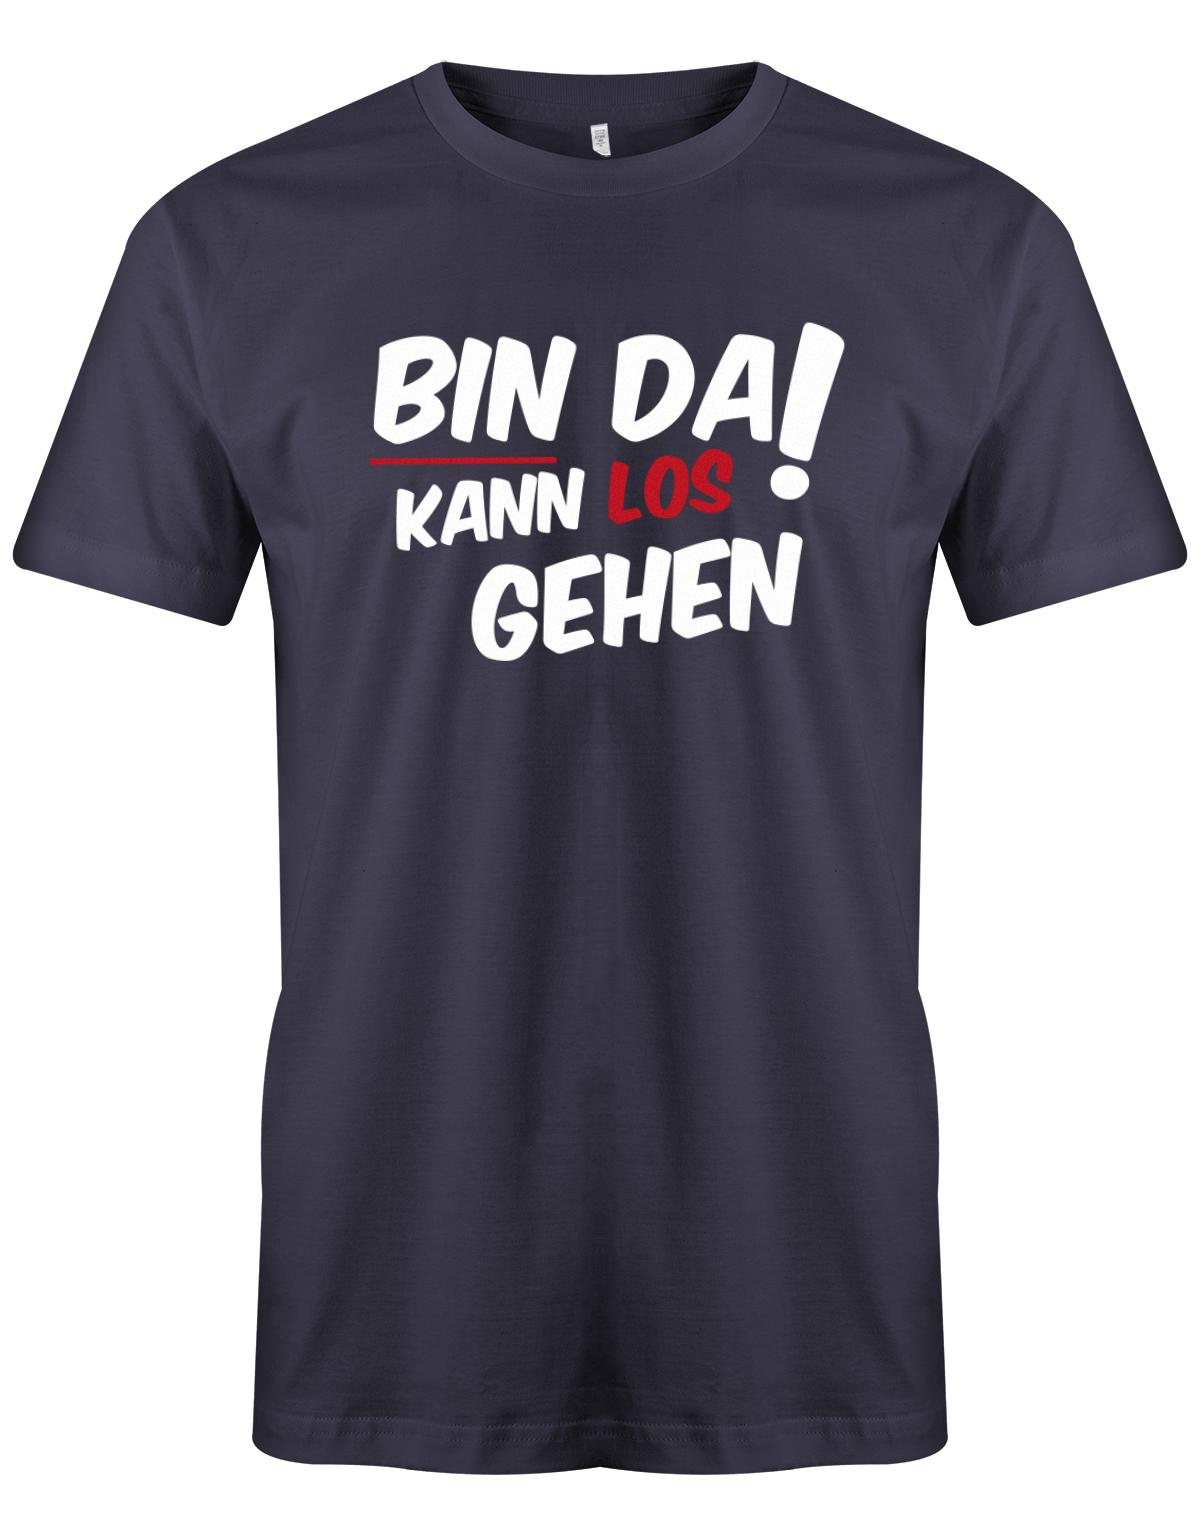 Bin da kann los gehen - Fun Lustige Sprüche - Herren T-Shirt myShirtStore Navy